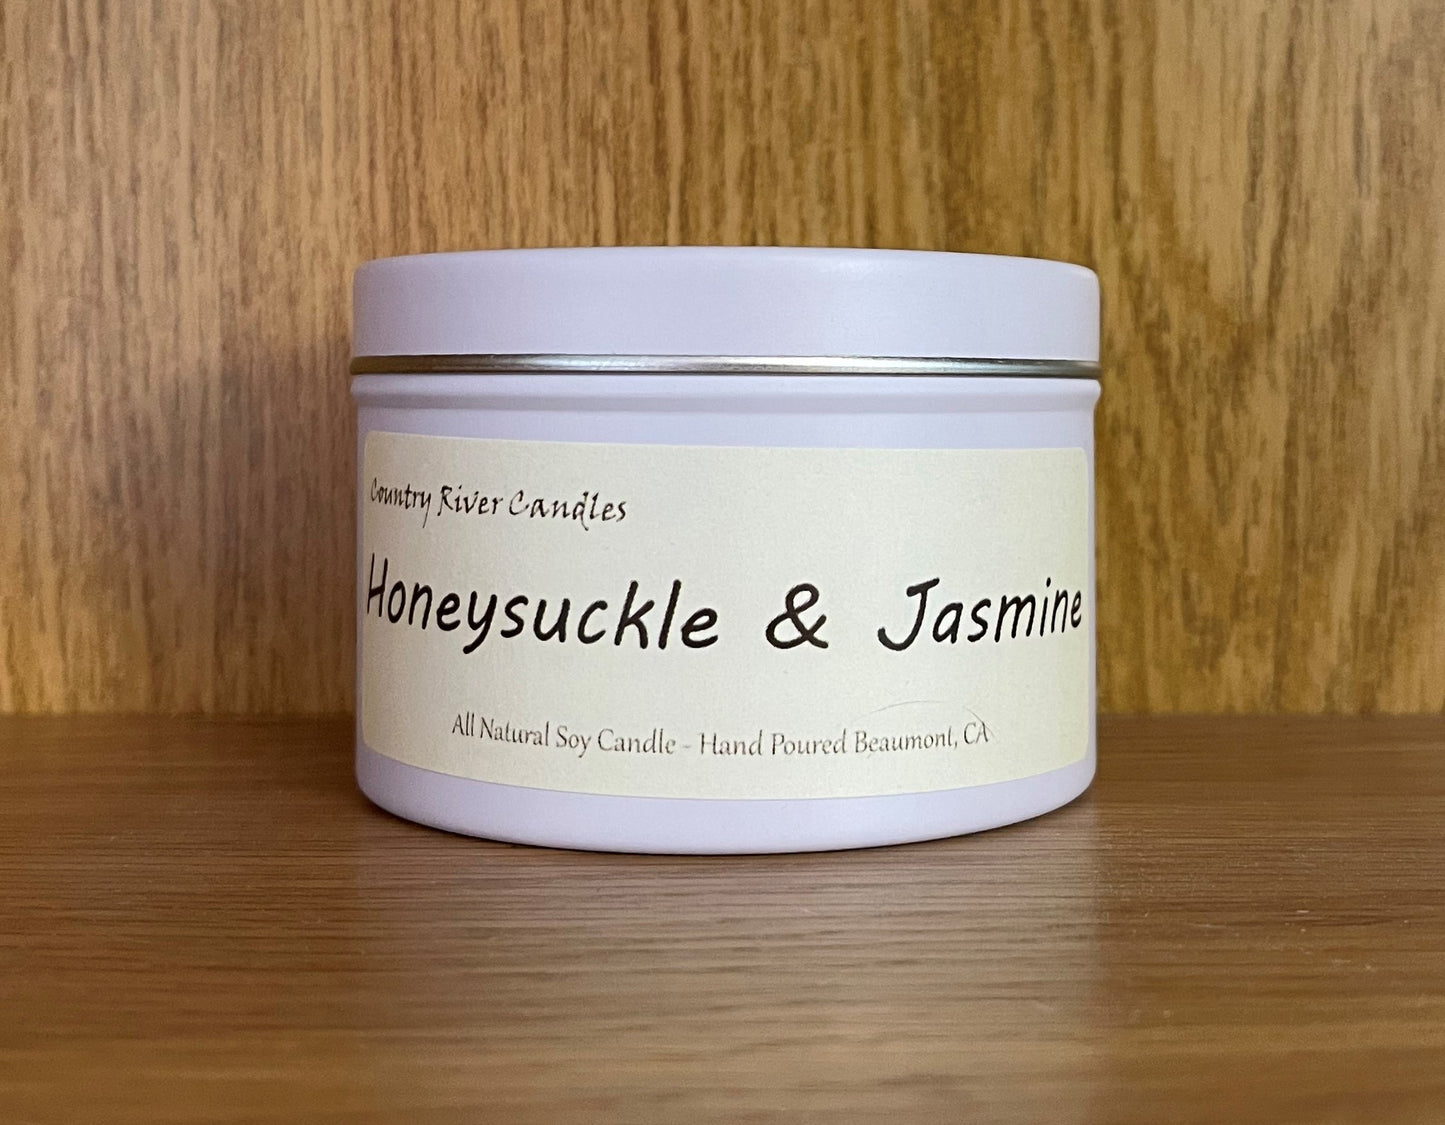 Honeysuckle Jasmine